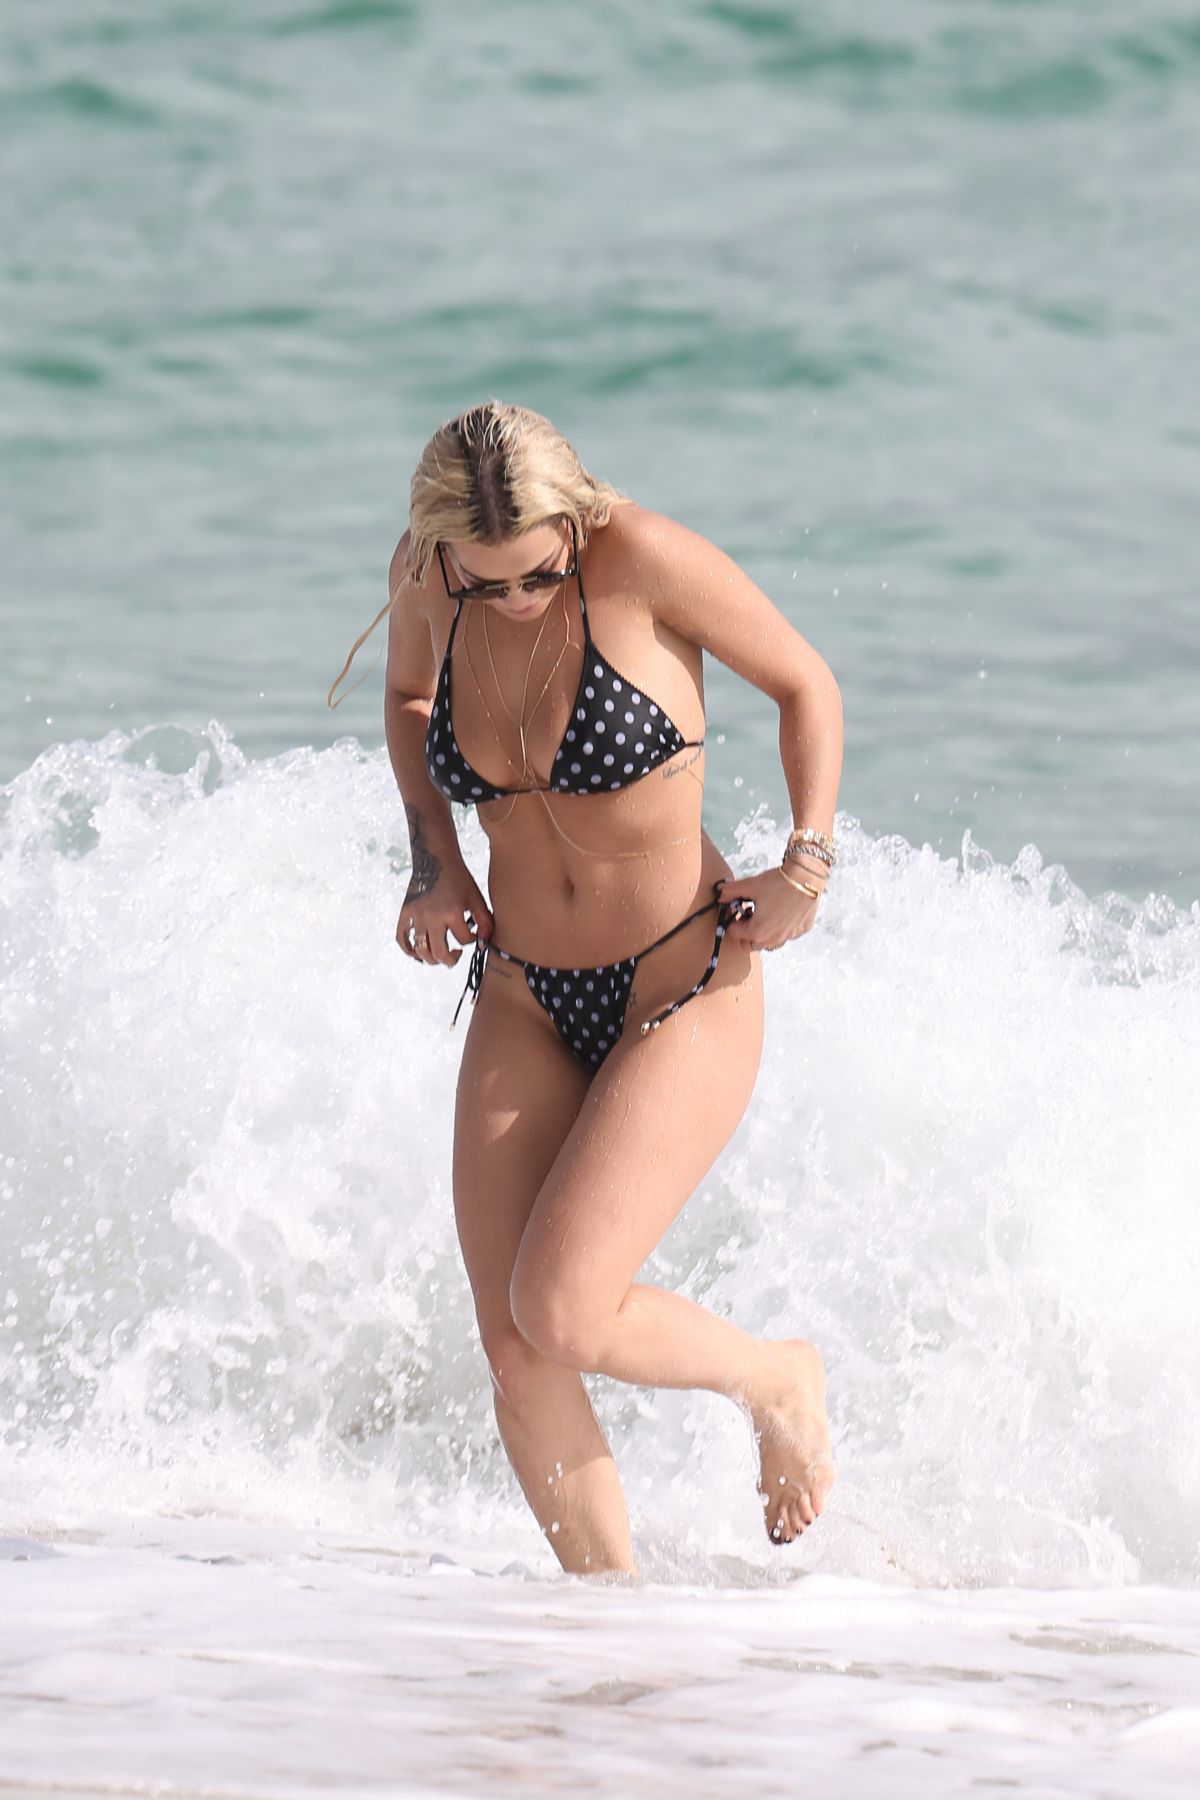 rita-ora-in-polka-dot-bikini-at-a-beach-in-miami-12-30-2015_10.jpg